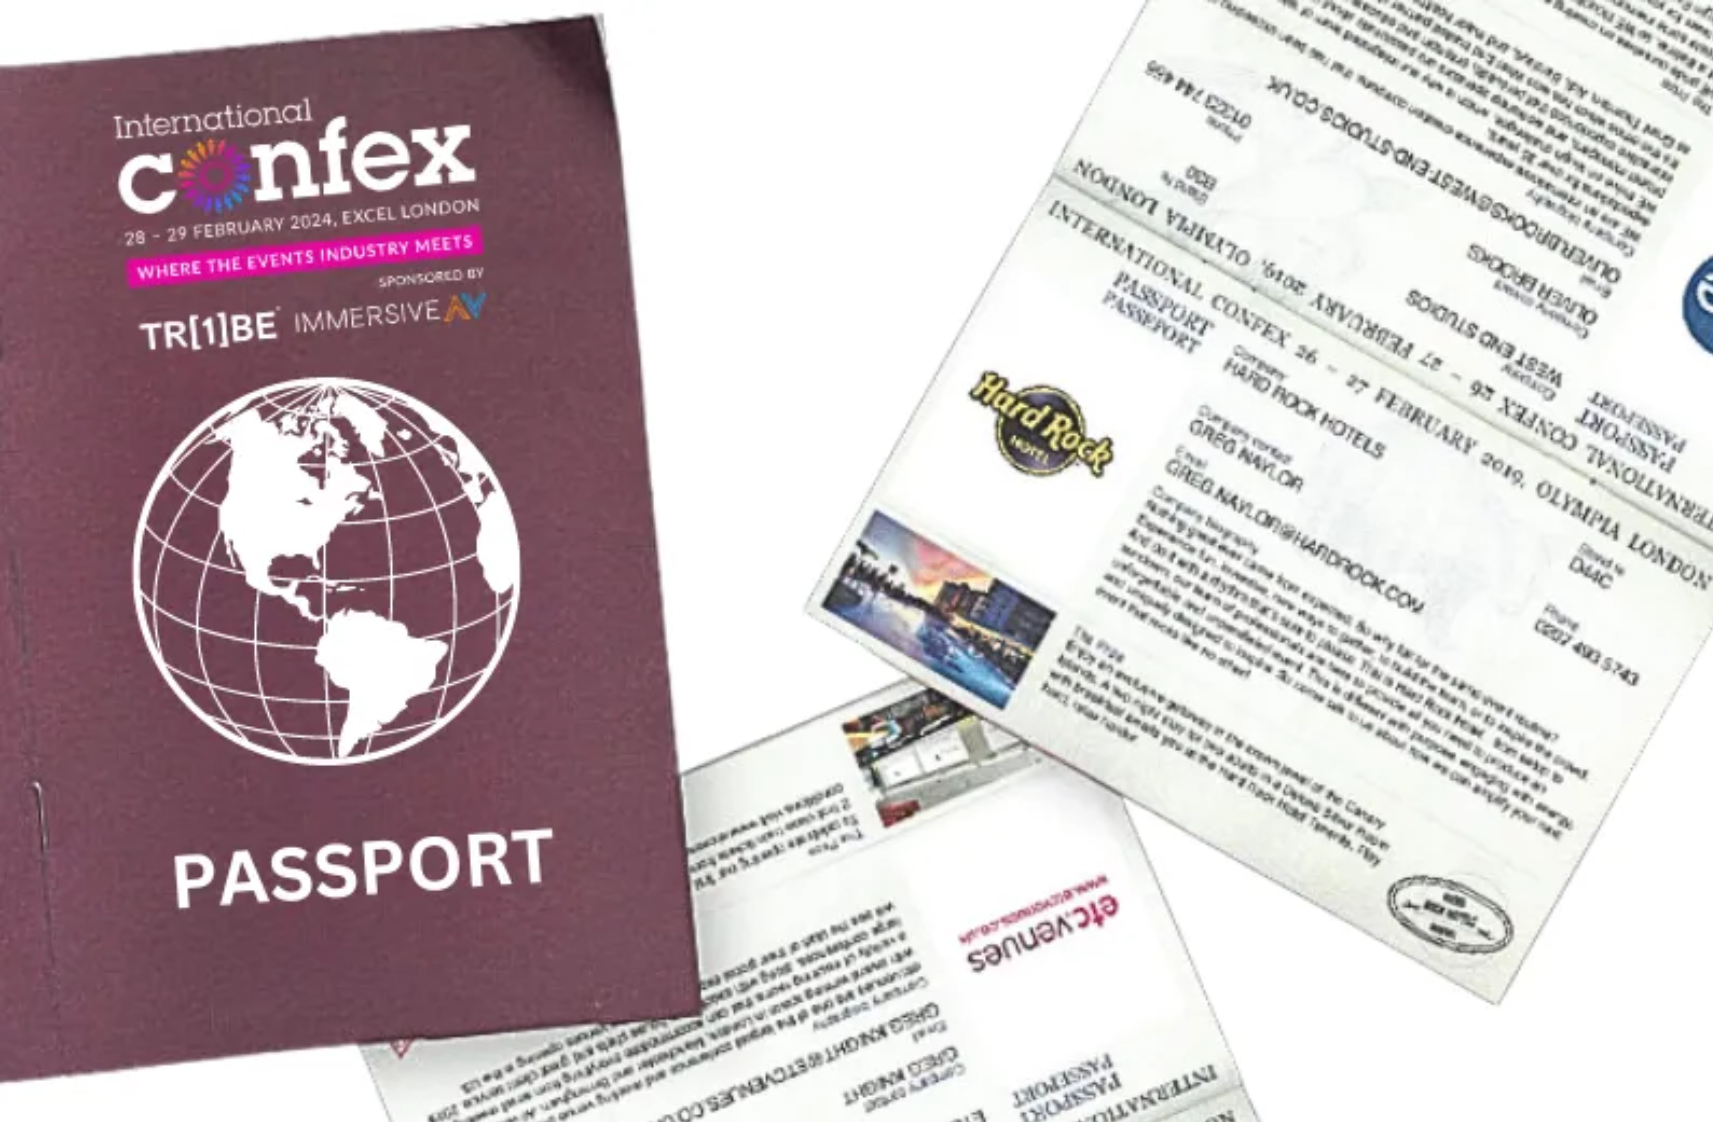 Confex Passport